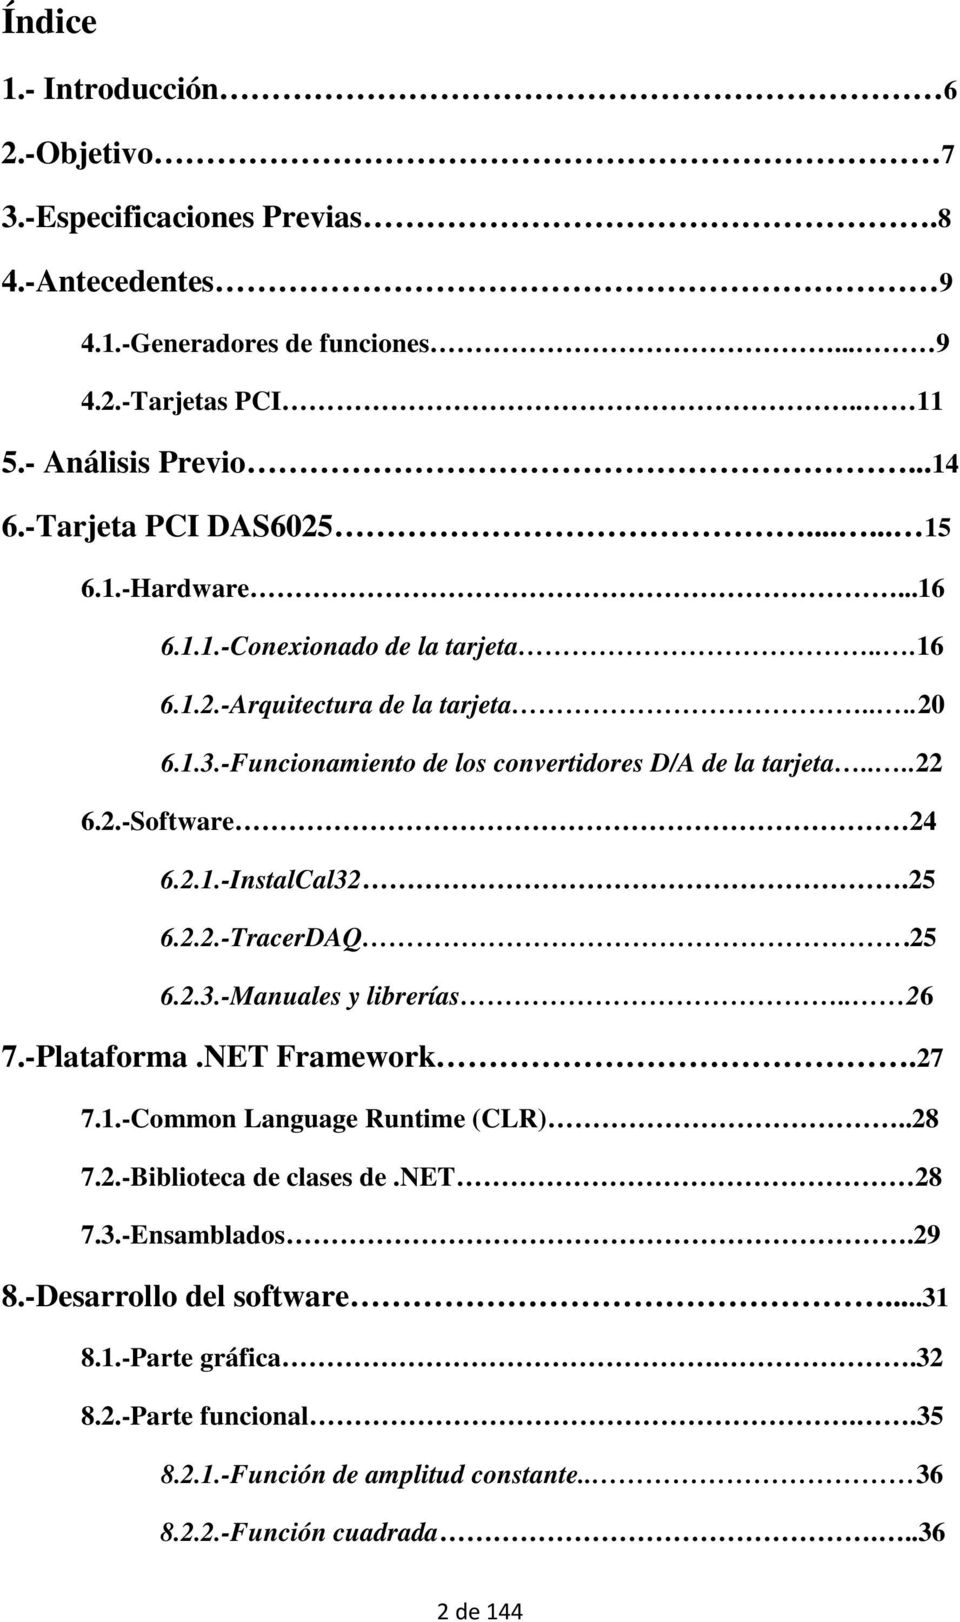 -Funcionamiento de los convertidores D/A de la tarjeta....22 6.2.-Software 24 6.2.1.-InstalCal32.25 6.2.2.-TracerDAQ.25 6.2.3.-Manuales y librerías.. 26 7.-Plataforma.NET Framework.27 7.